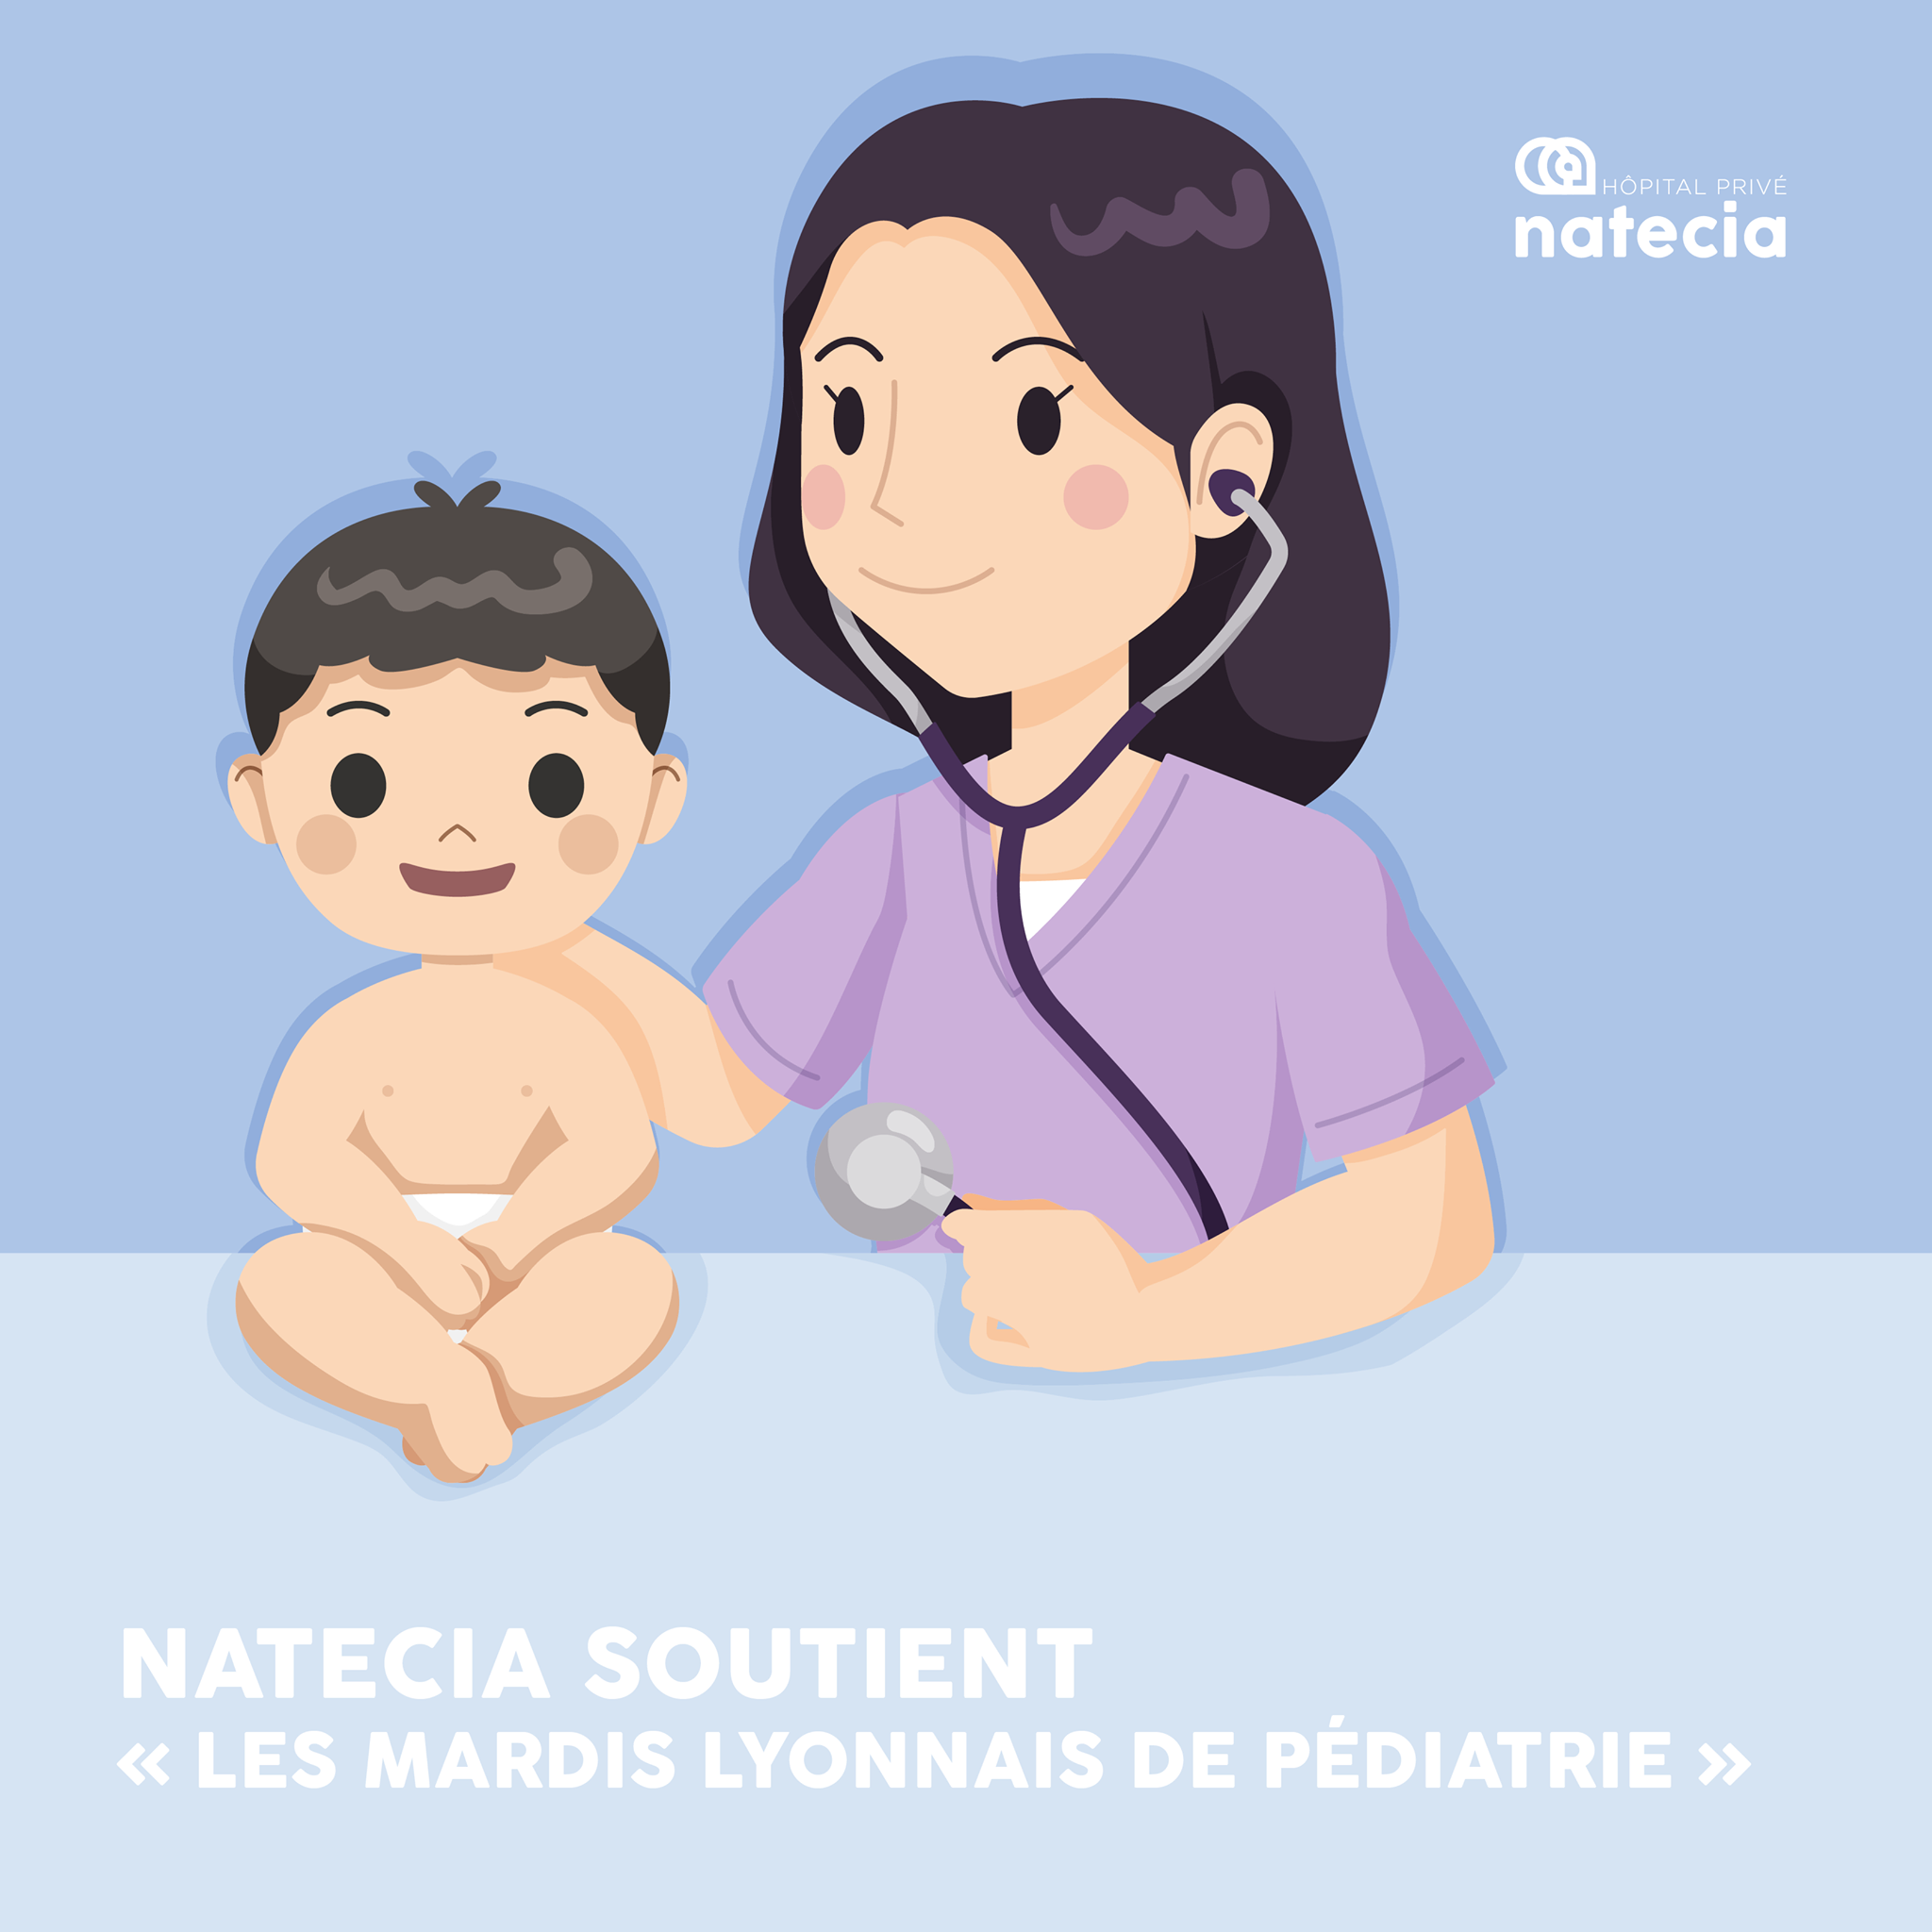 Lire la suite à propos de l’article Les mardis Lyonnais de pédiatrie